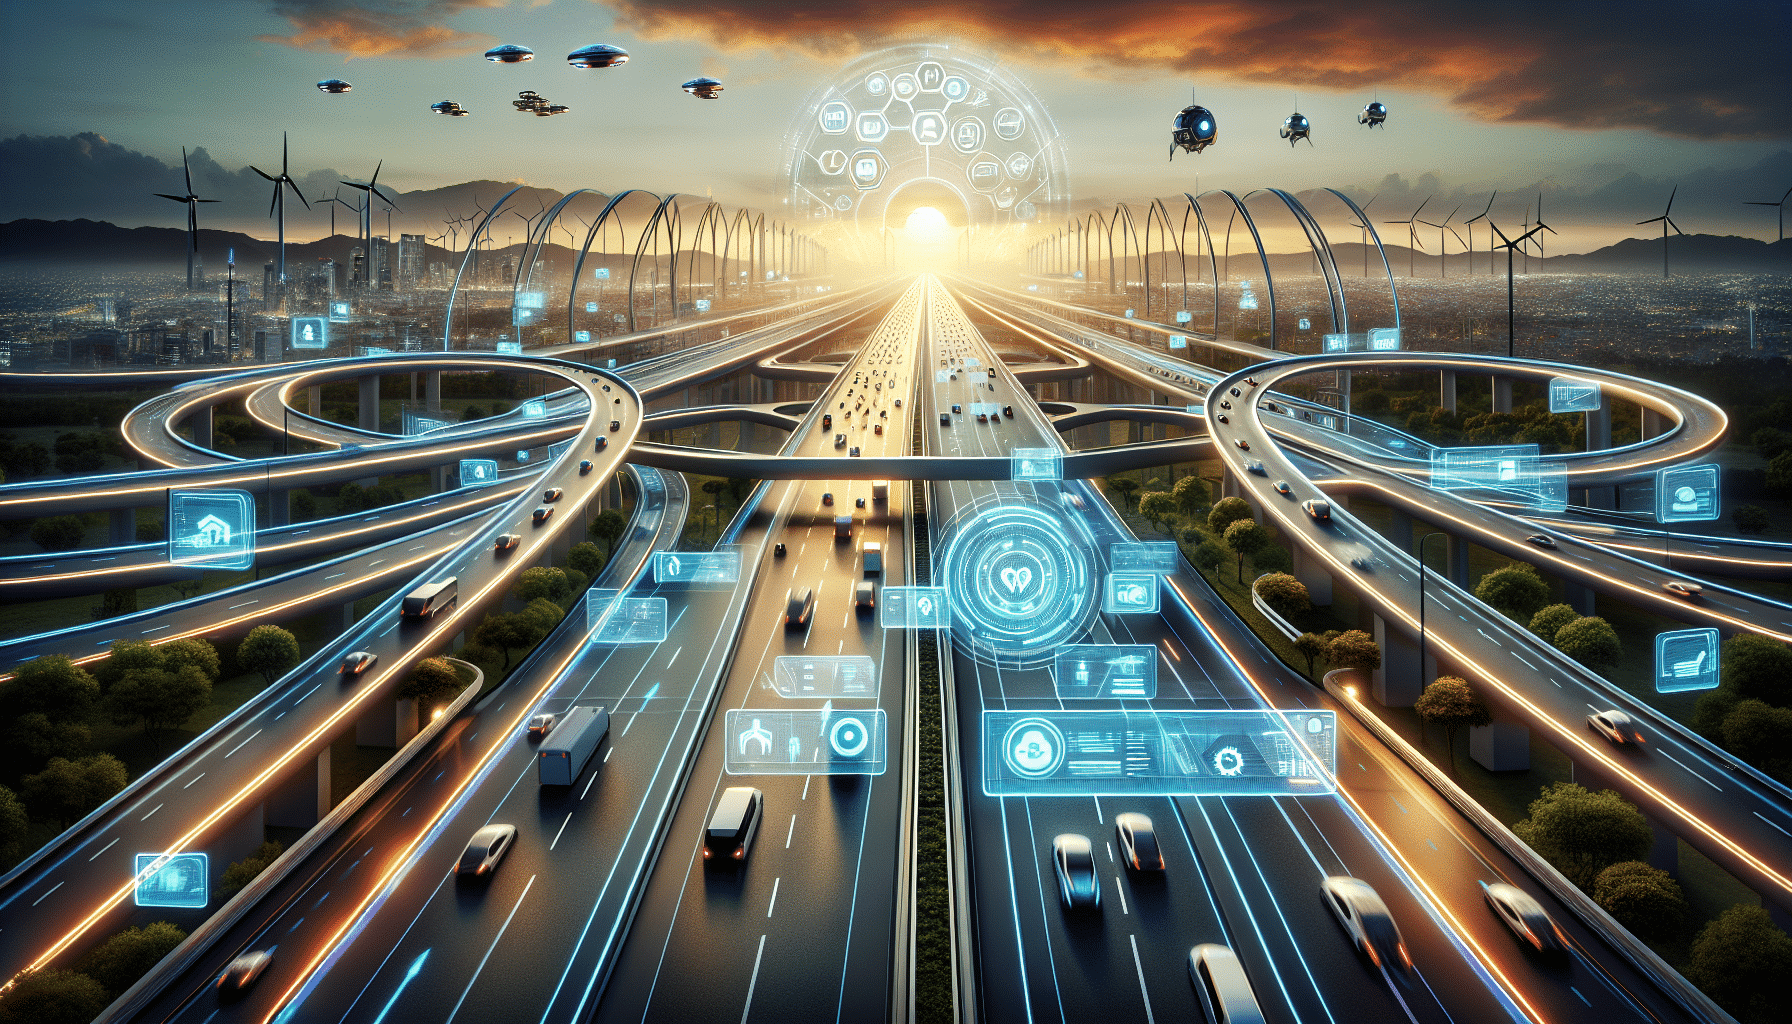 descubre las increíbles carreteras inteligentes del futuro y las innovadoras que ya están en funcionamiento.